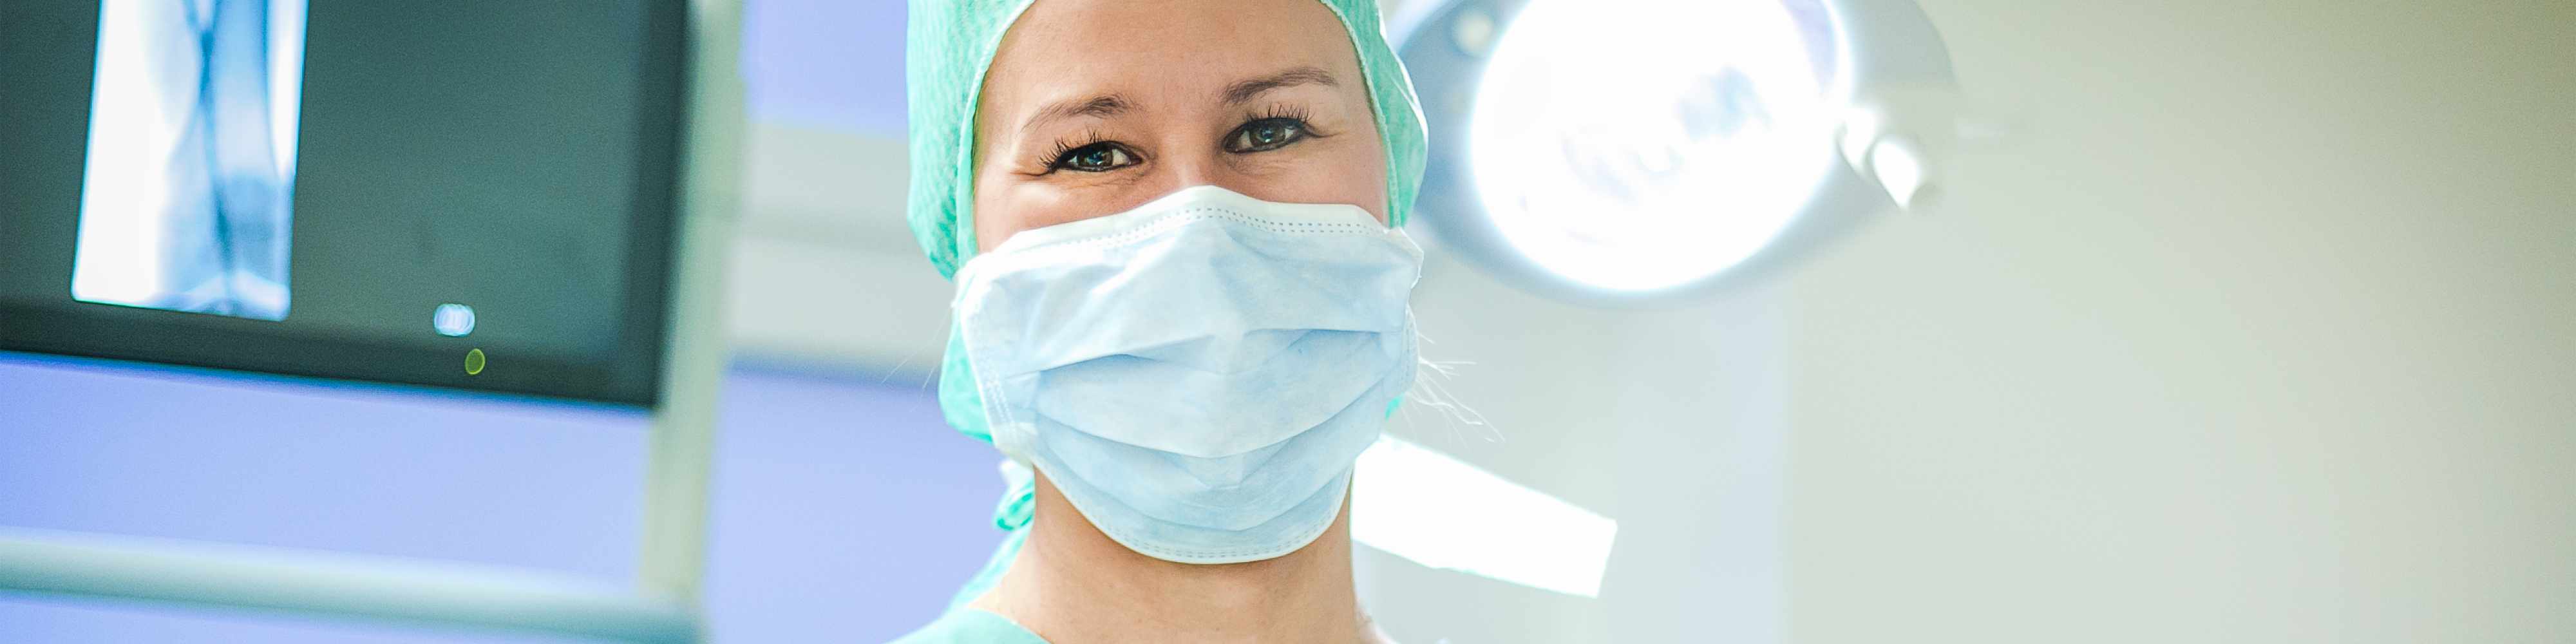 Gesundheits- und Krankenpfleger (m/w/d) in Vollzeit und Teilzeit für unsere chirurgischen Stationen